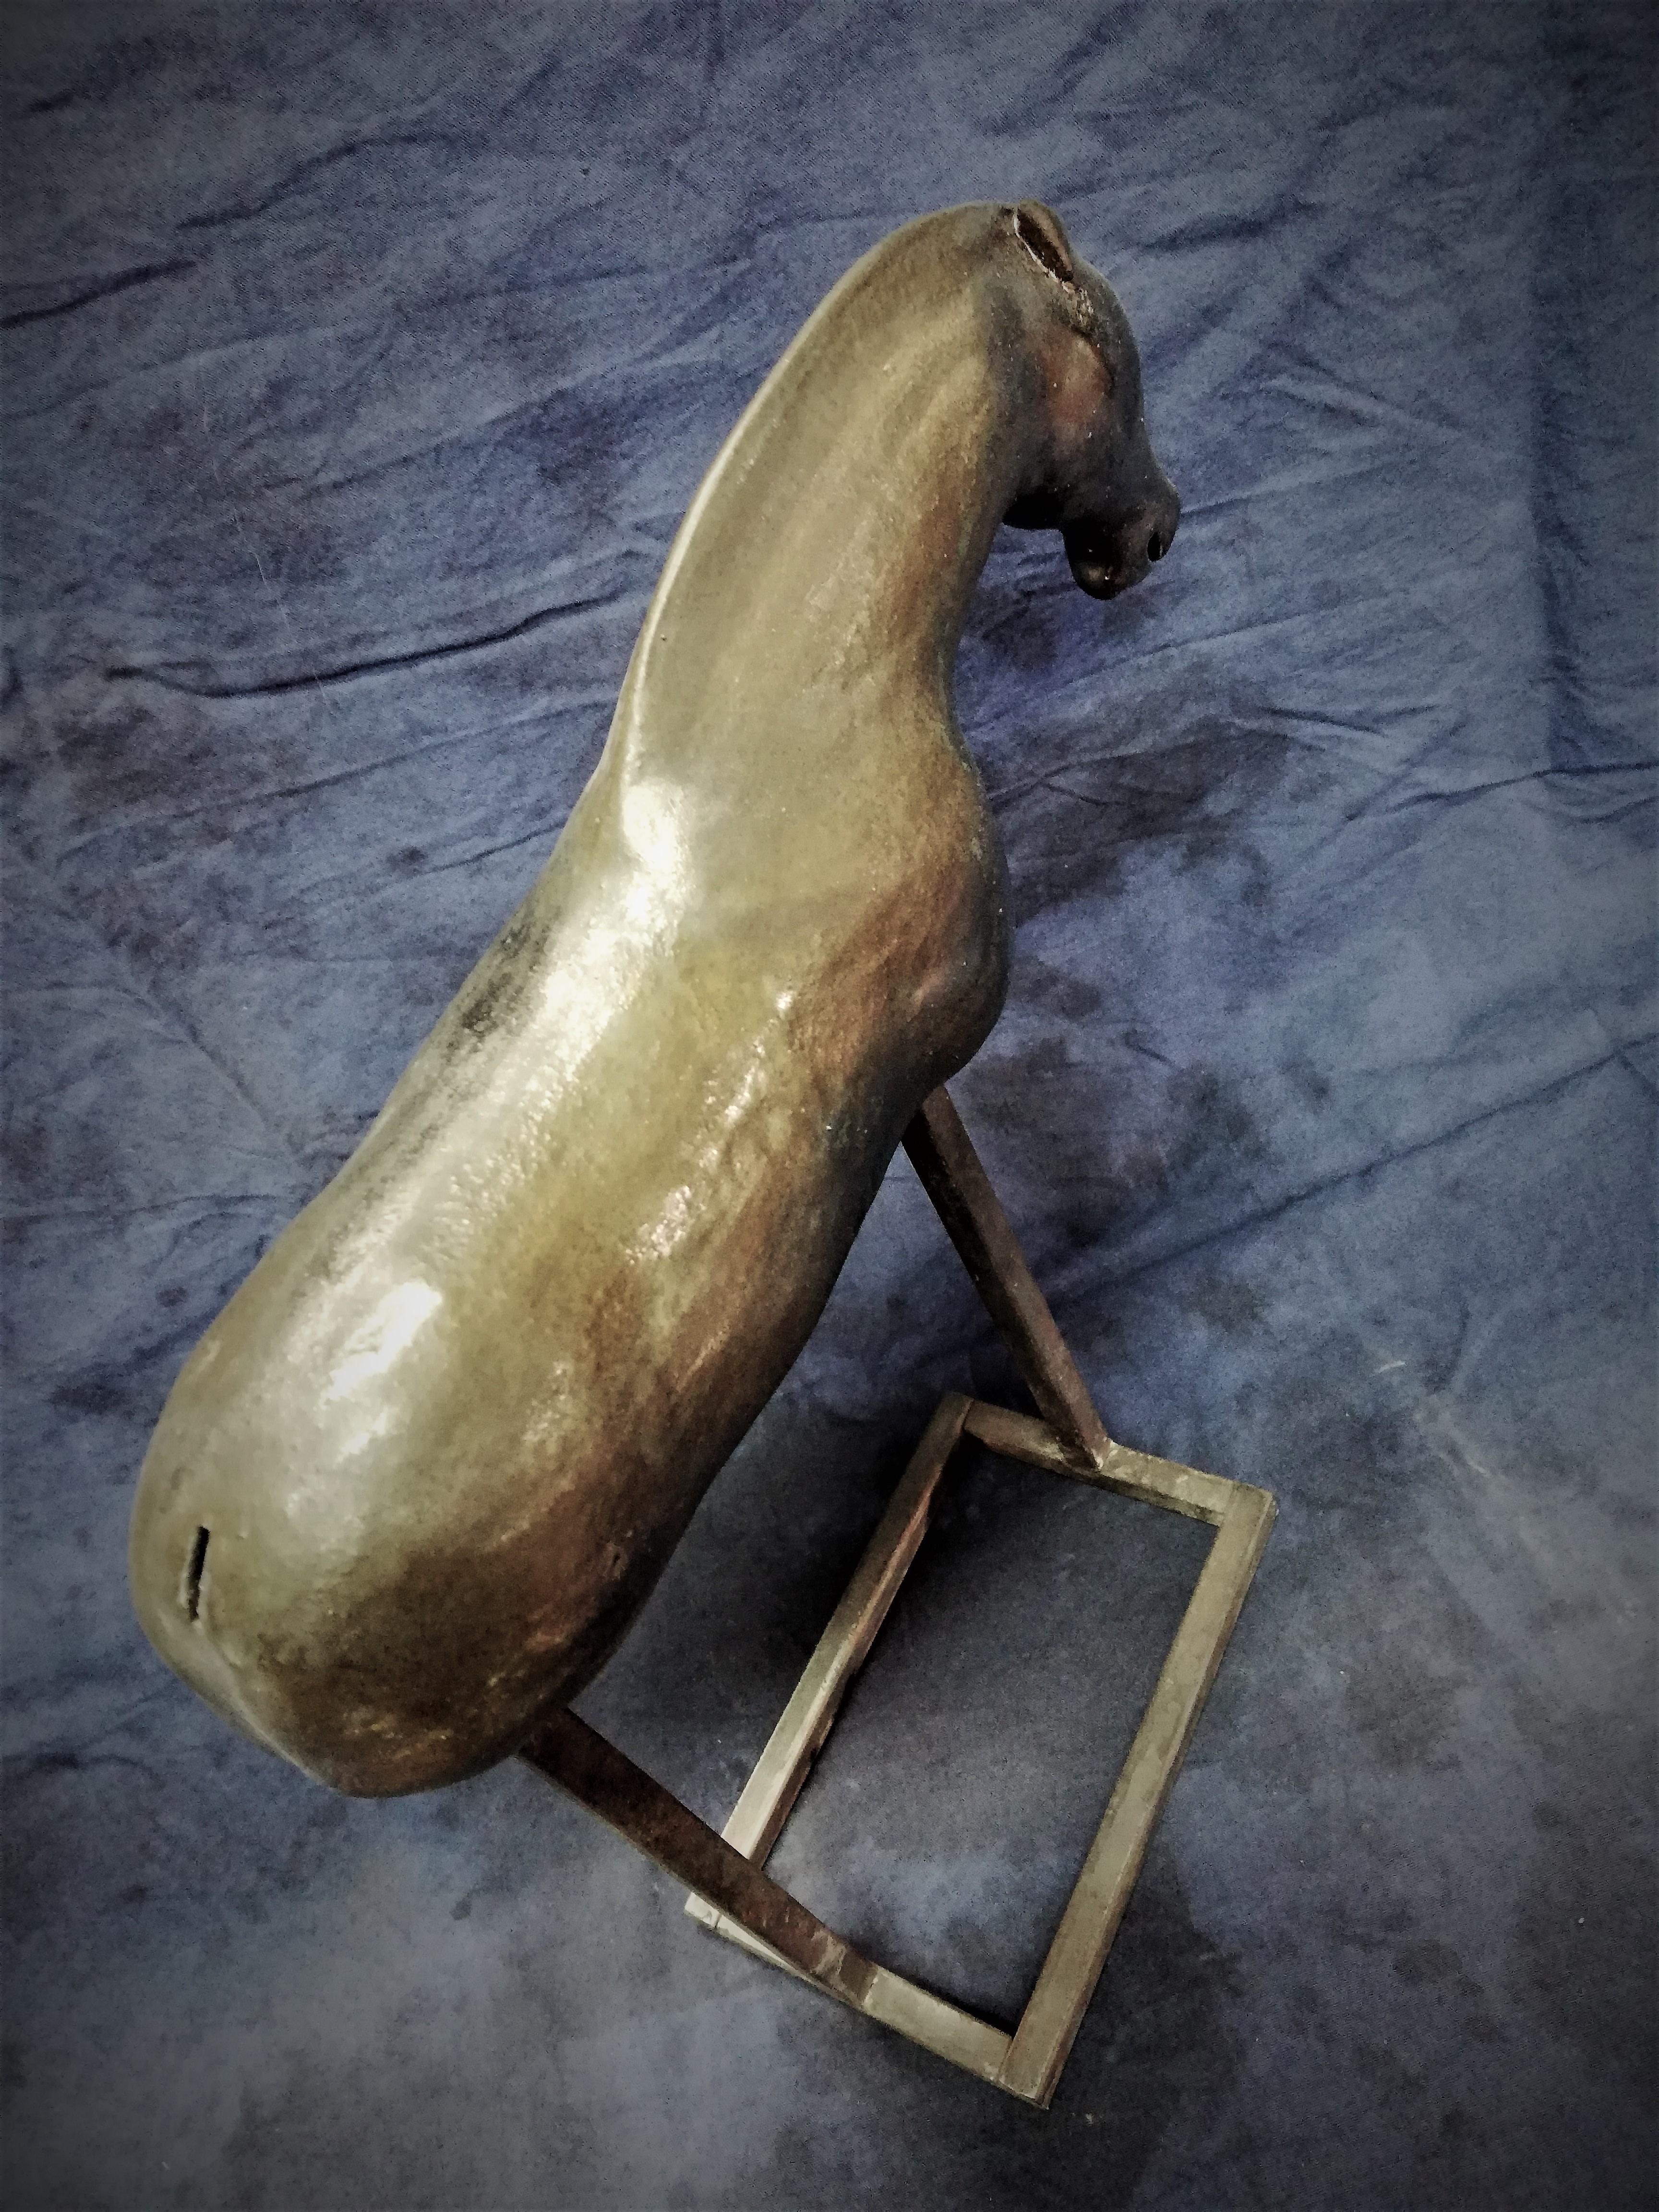 Bogulaw Popowicz, Unique Golden Horse, Welded Ceramic Technique, 32x28x10cm 2019 - Contemporary Sculpture by Boguslaw Popowicz